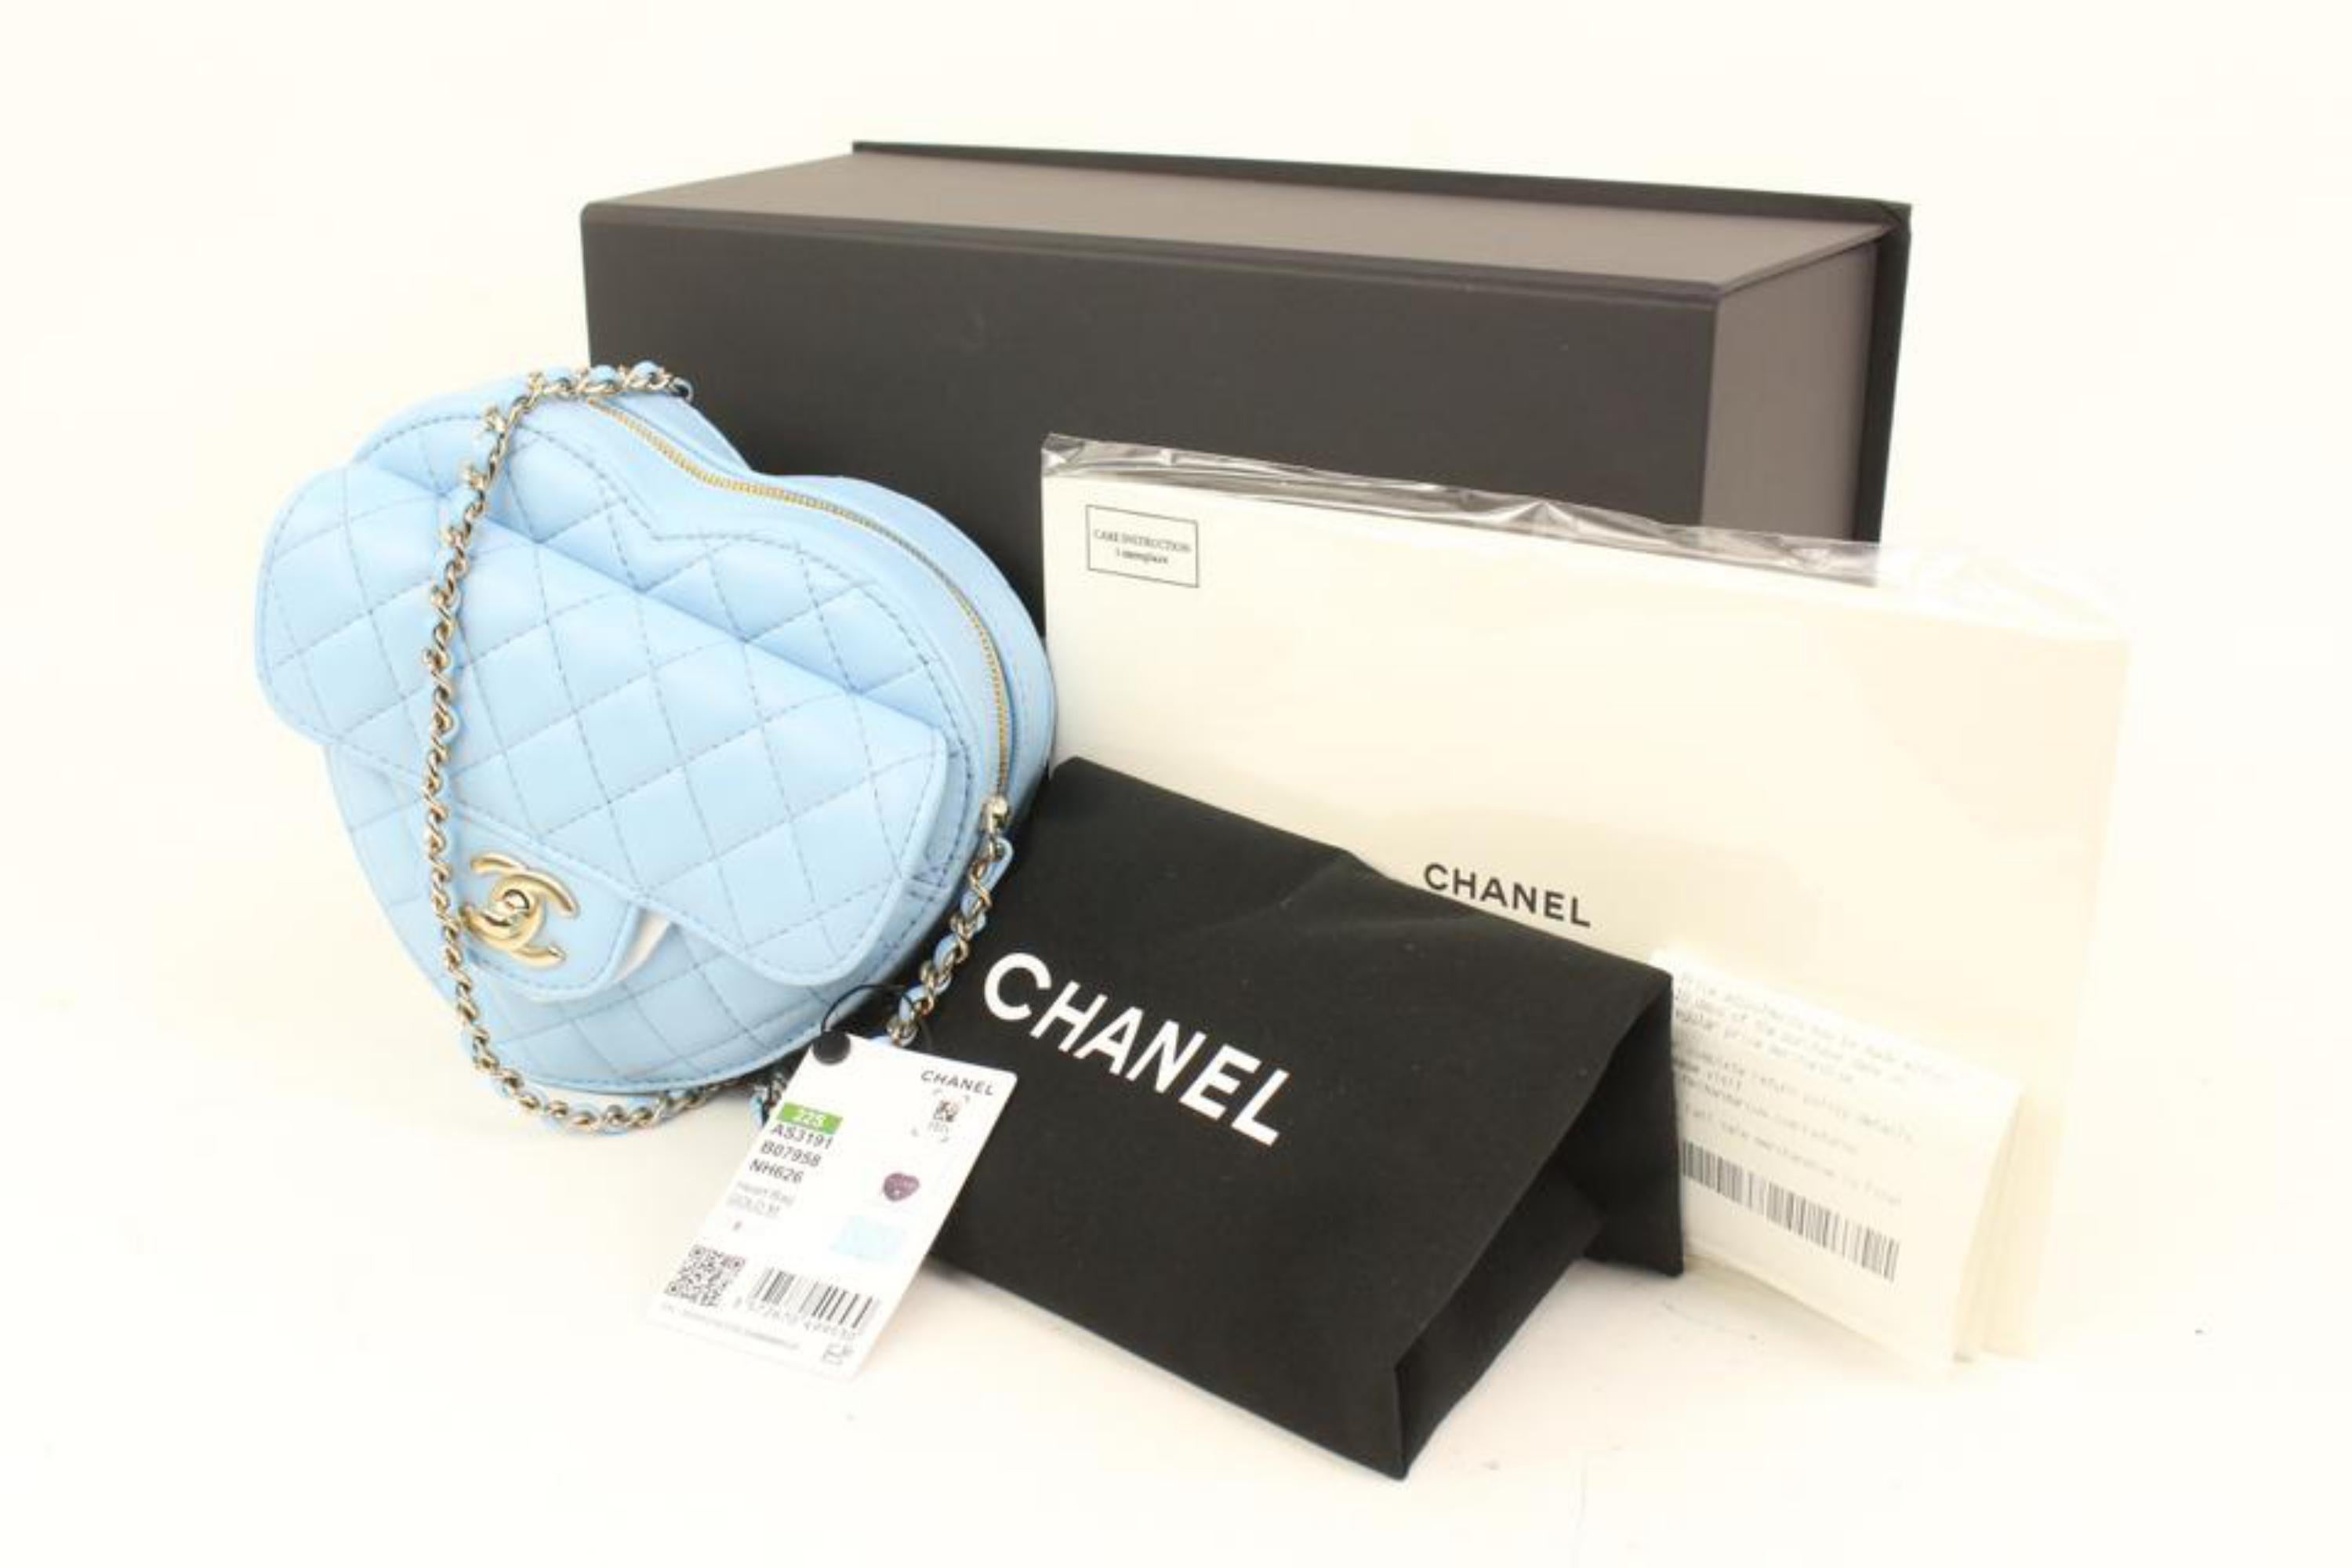 Chanel 22s Blau Gestepptes Lammfell CC in Love Große Herz Tasche GHW 10cz426s
Datum Code/Seriennummer: KNHLPN6A
Hergestellt in: Frankreich
Maße: Länge:  7